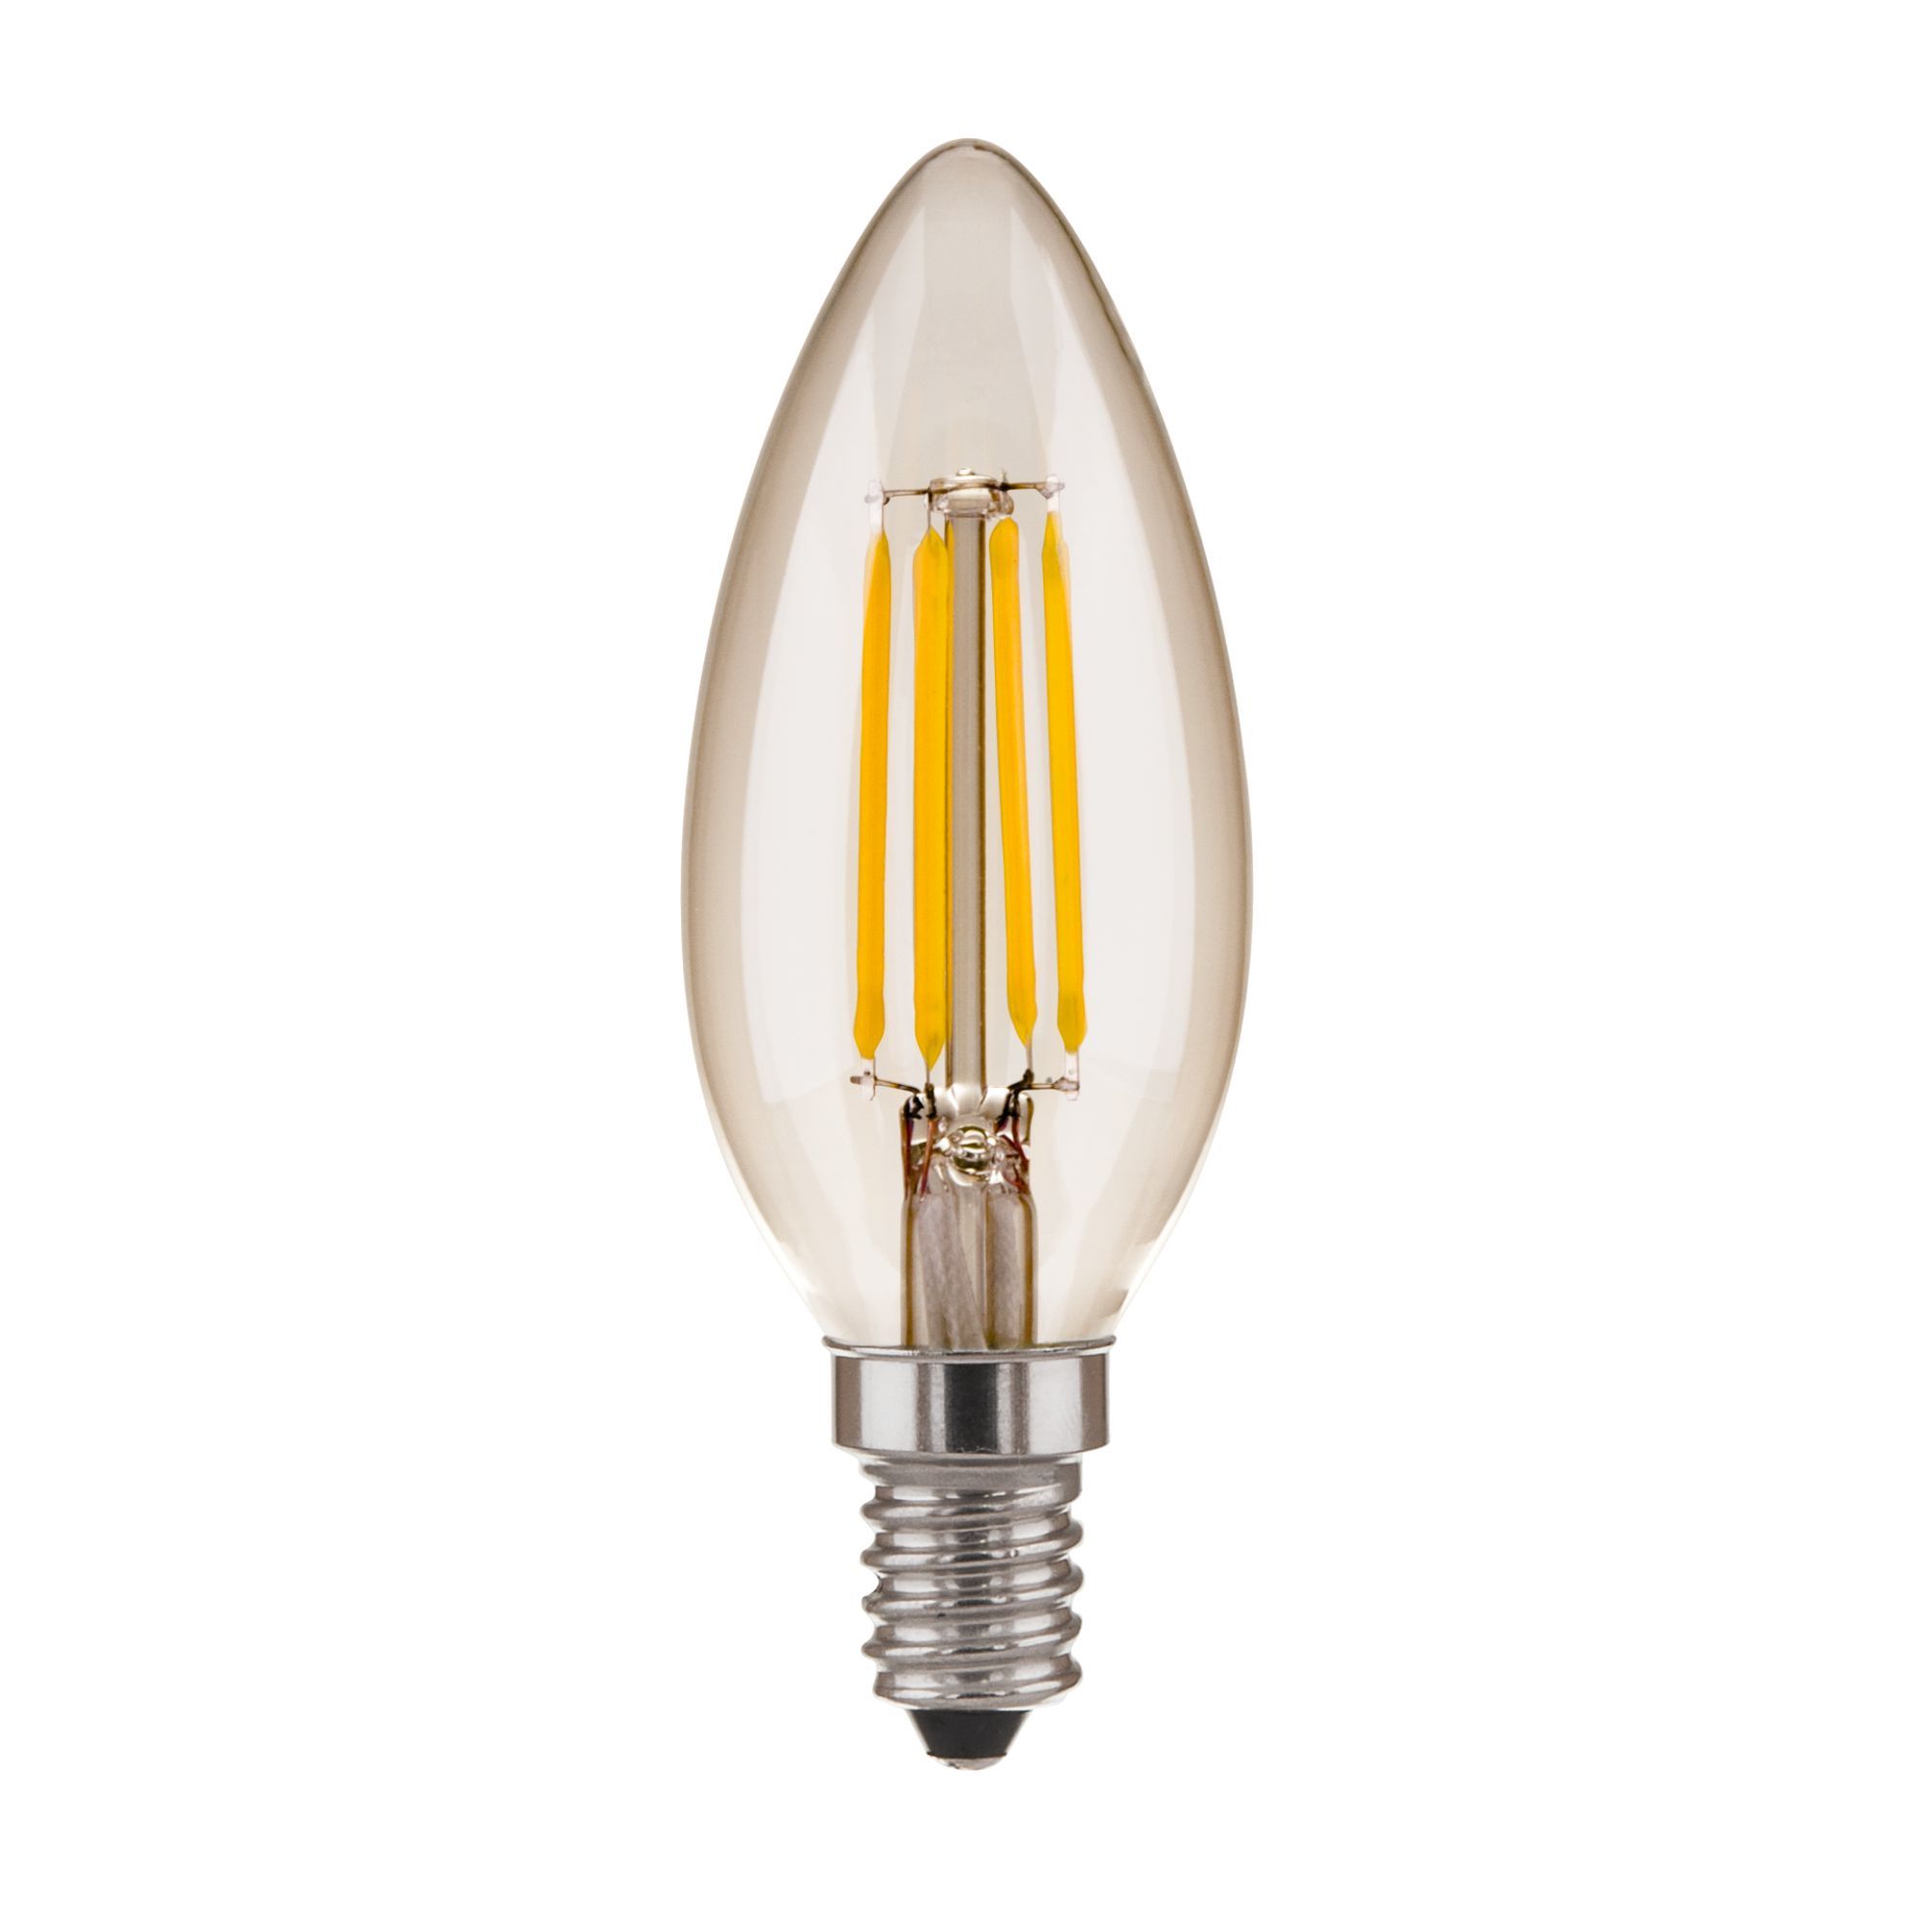 Филаментная светодиодная лампа "Свеча" C35 7W 3300K E14 BL131